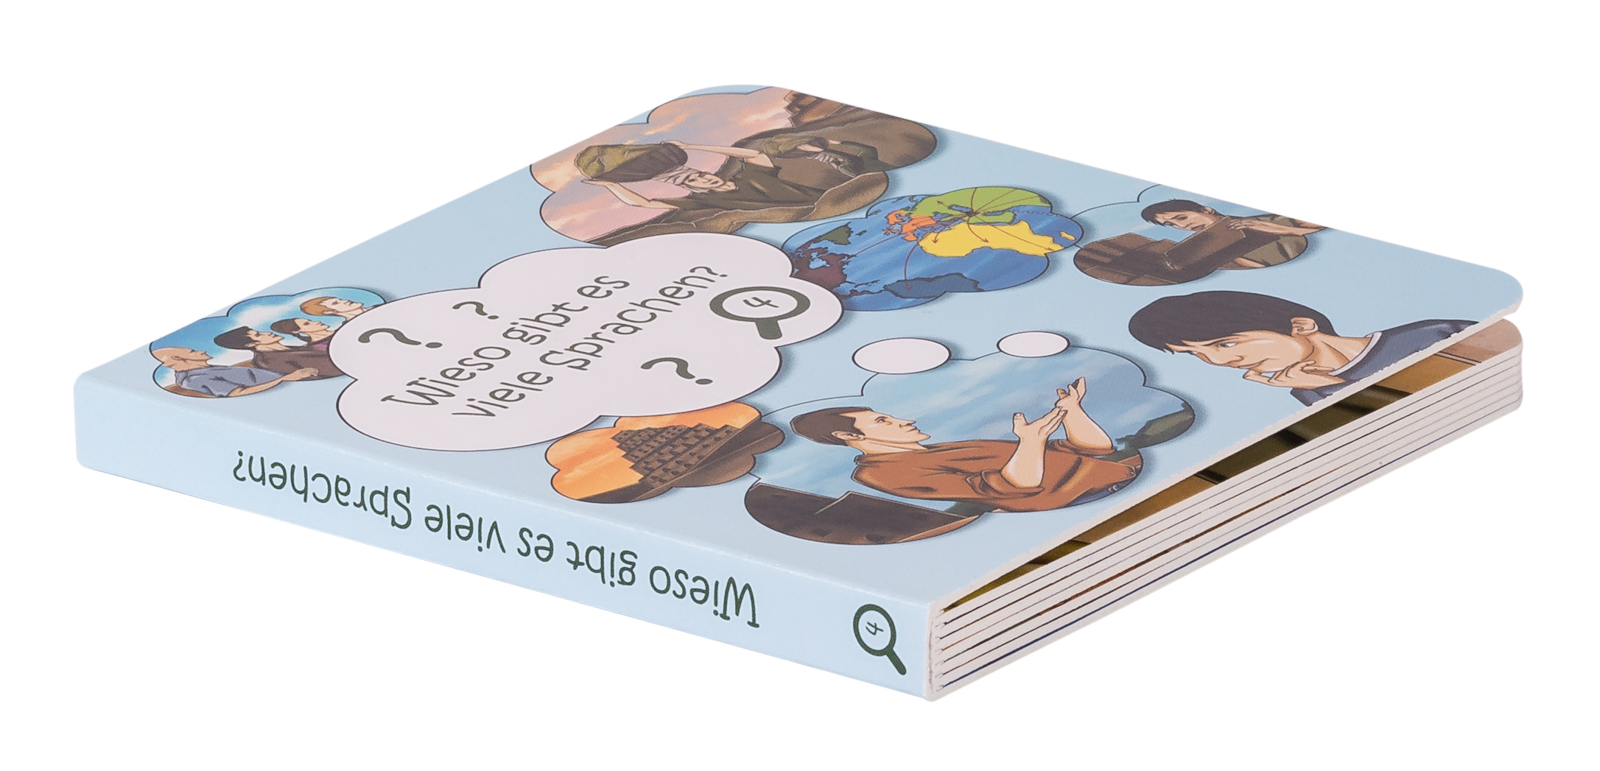 Pappbuch - Wieso gibt es viele Sprachen?